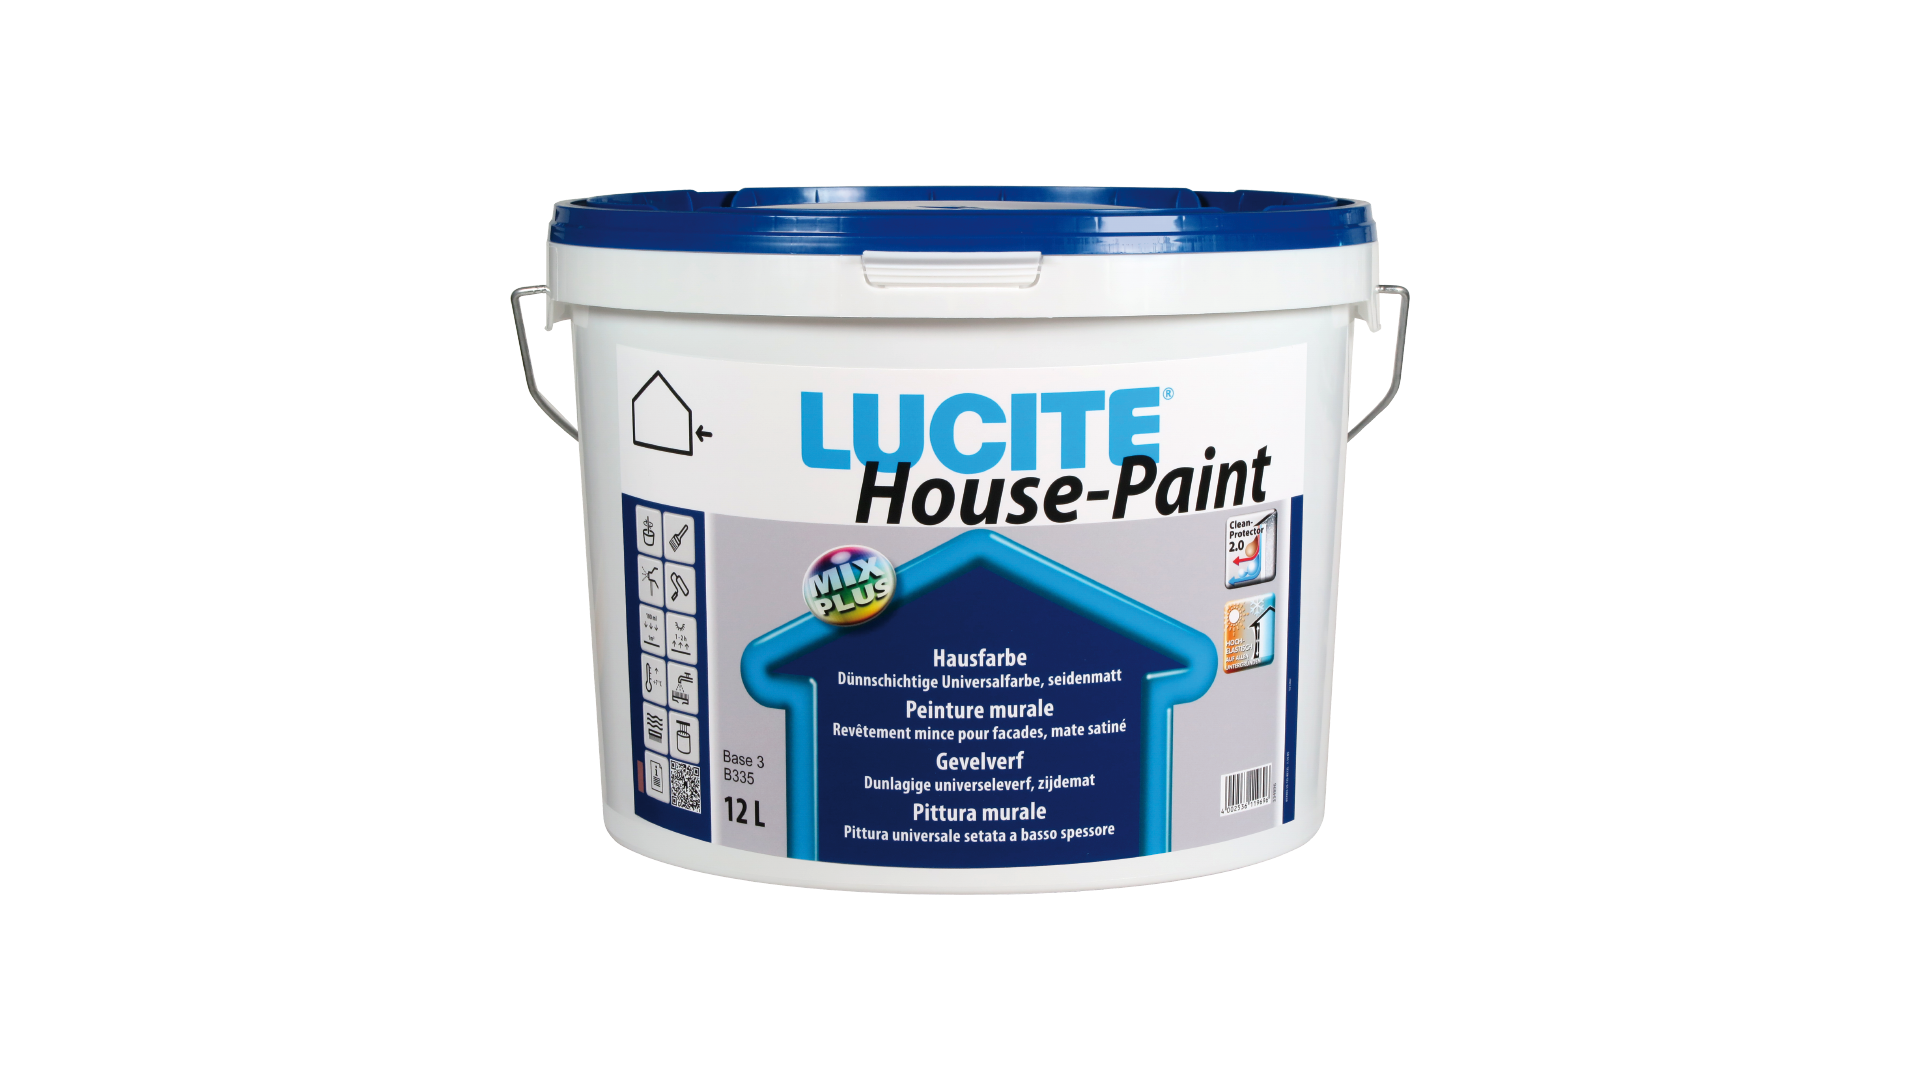 lucite-house-paint